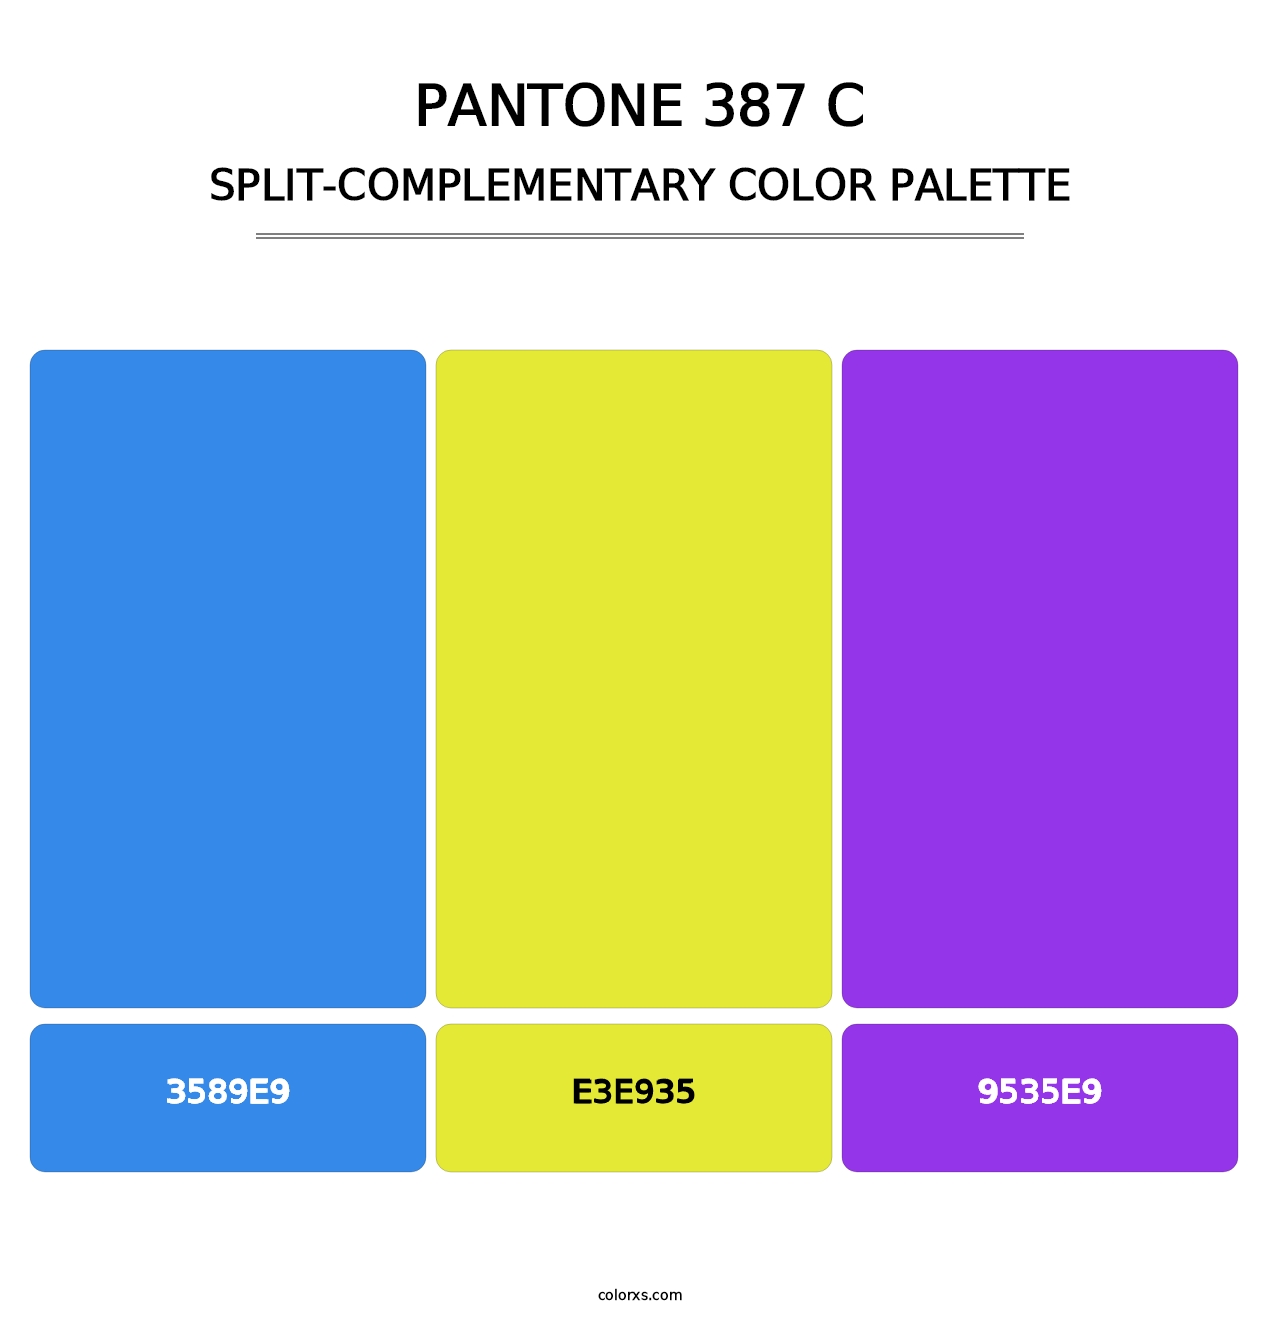 PANTONE 387 C - Split-Complementary Color Palette